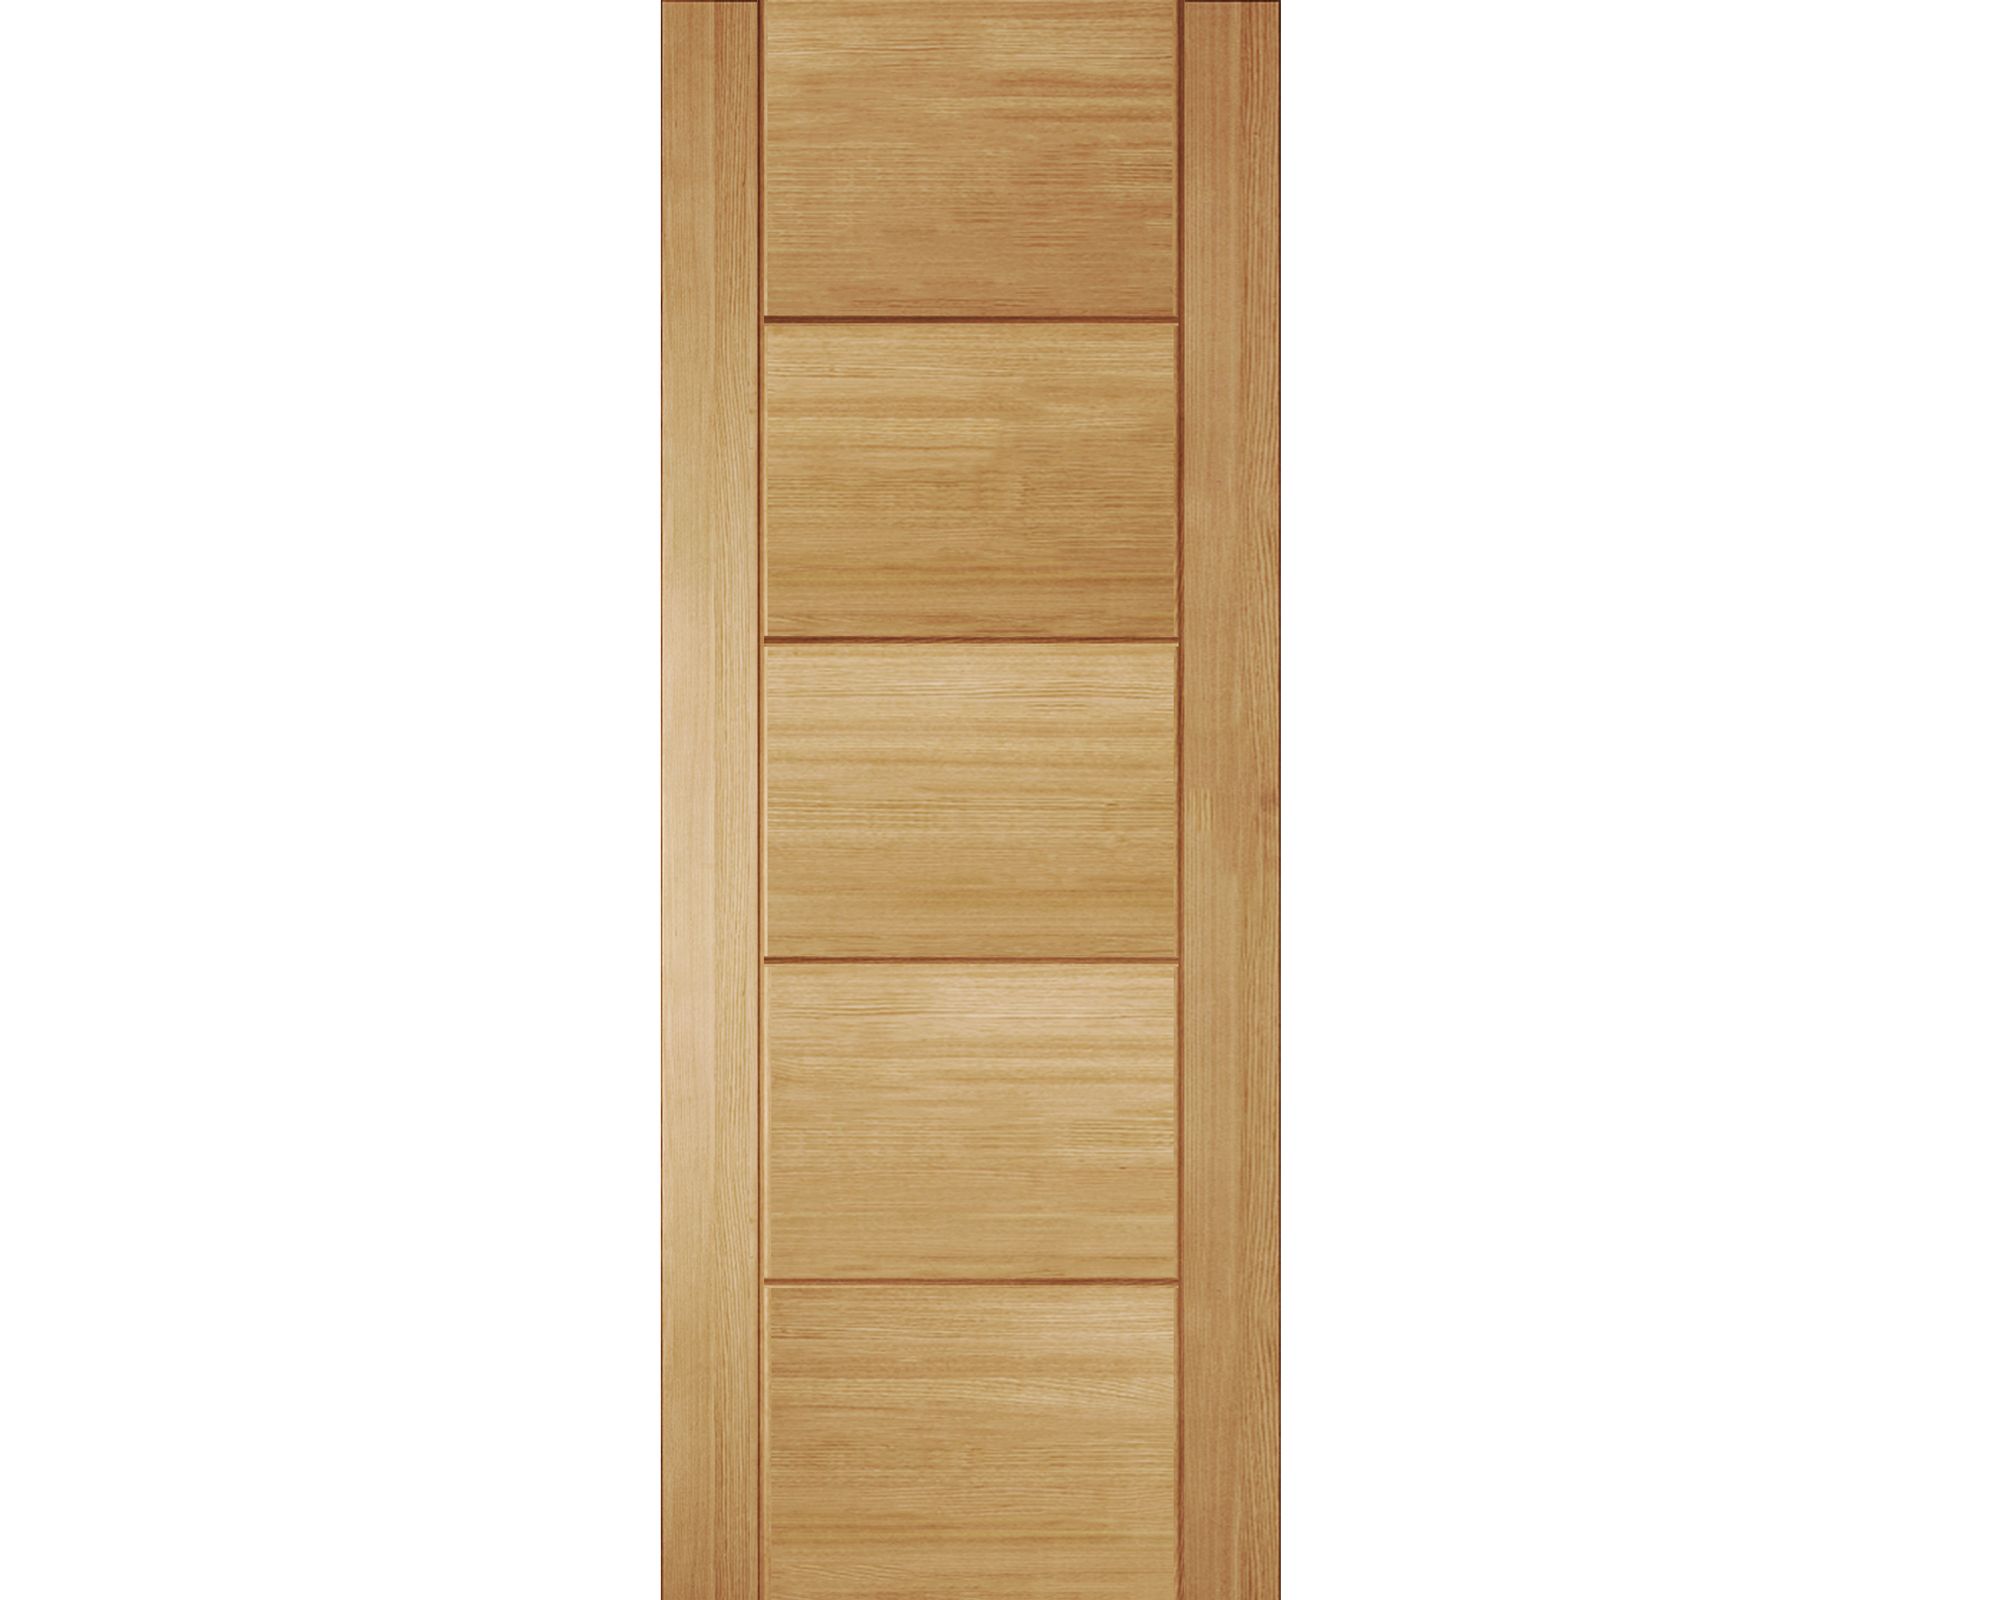 Fully finished Linear Contemporary White oak veneer Internal Fire door, (H)1981mm (W)838mm (T)44mm